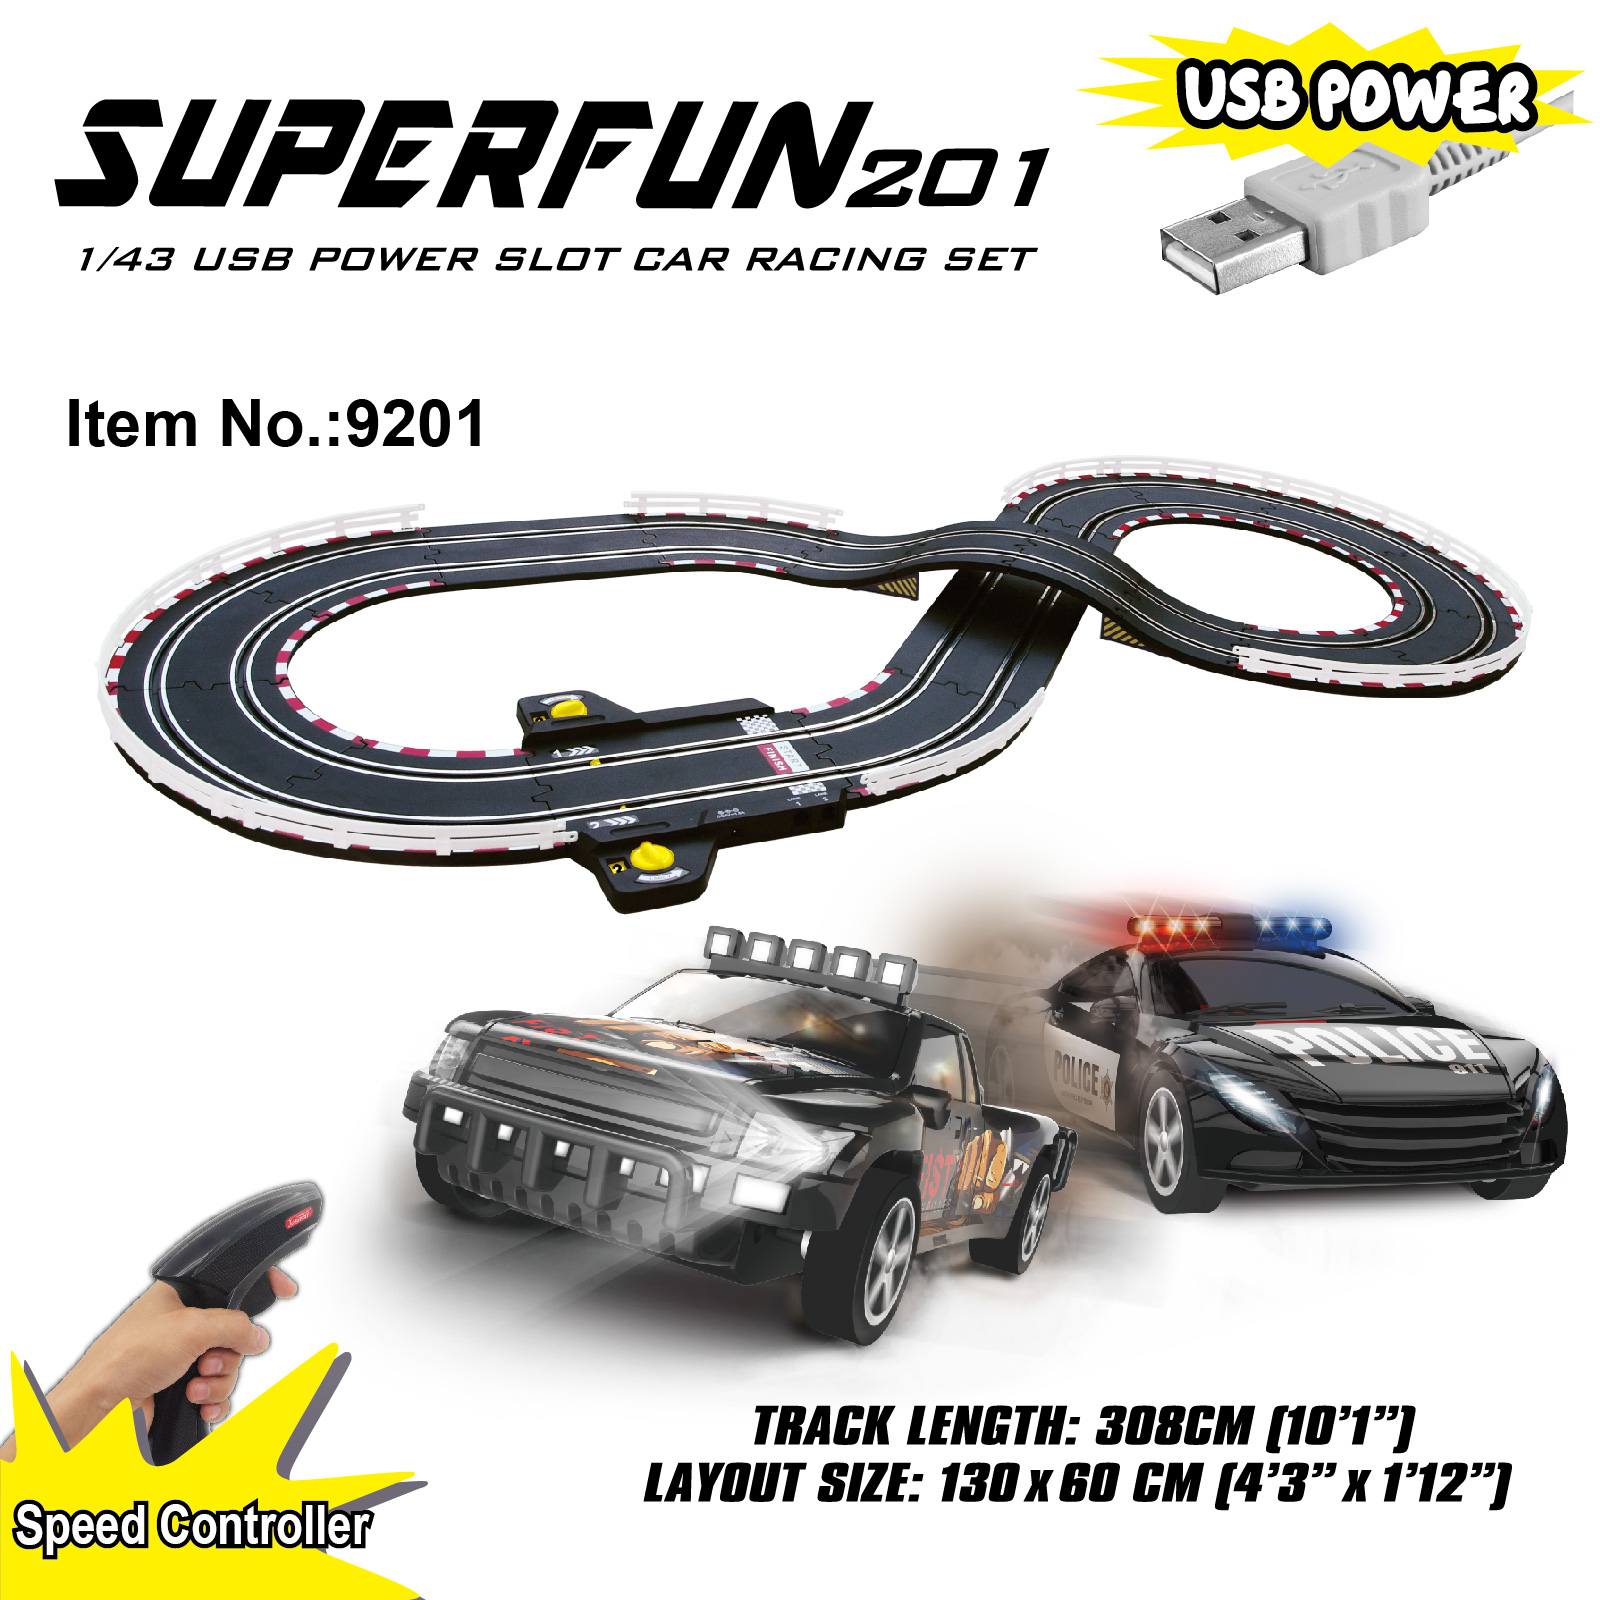 SuperFun 201 Slot Racing Set